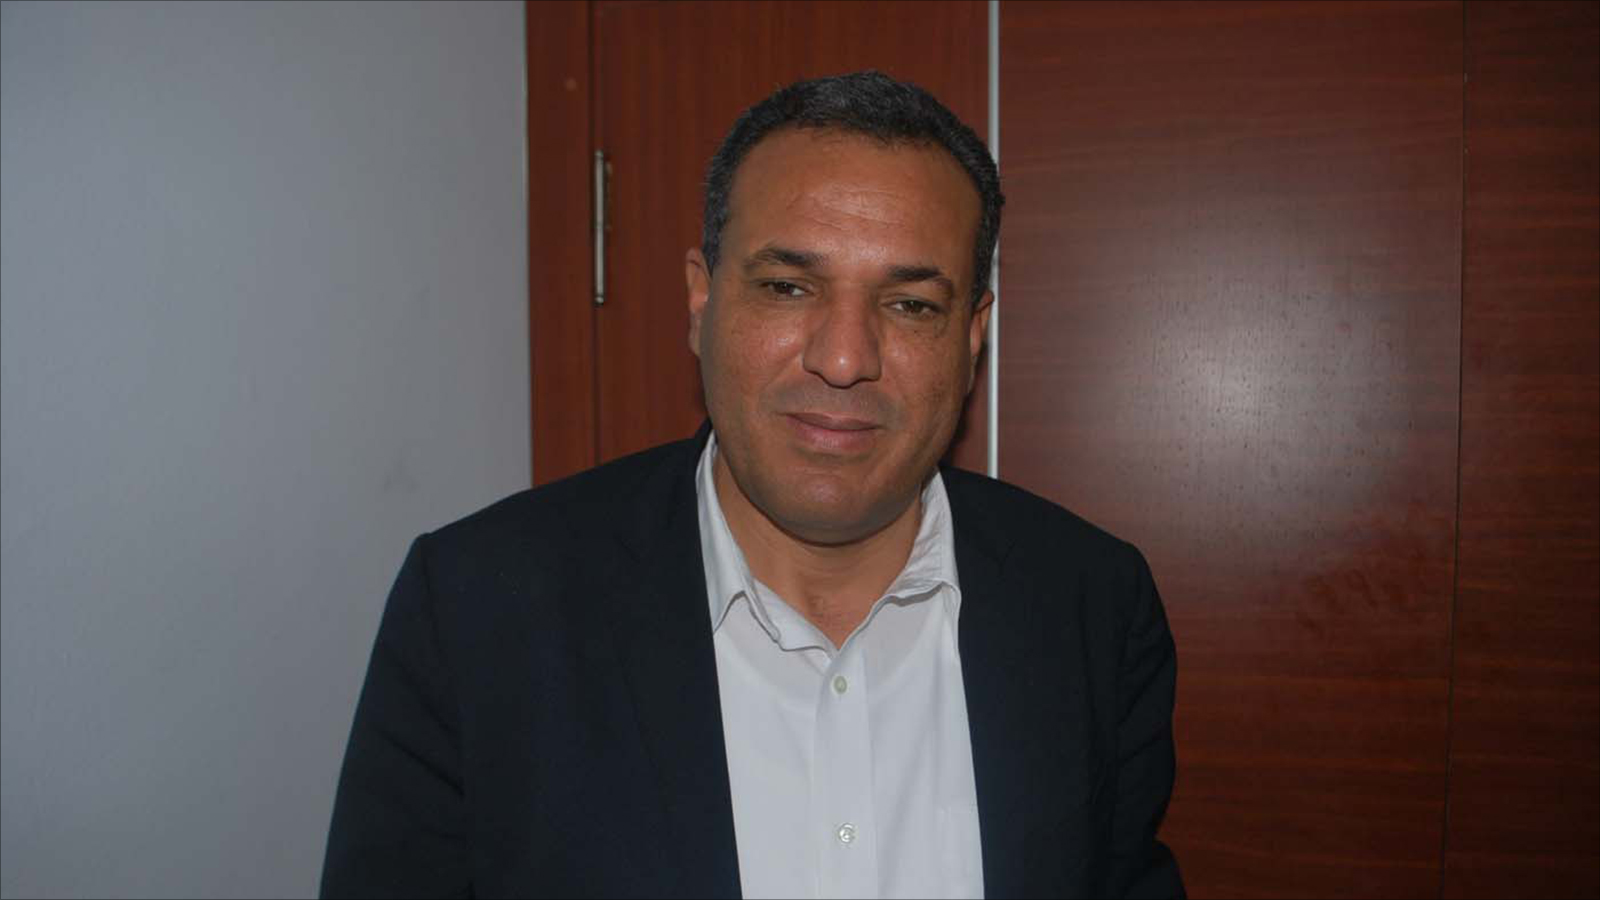 البوغديري: موقف اتحاد الشغل لا يعادي اليهود أبدا (الجزيرة)